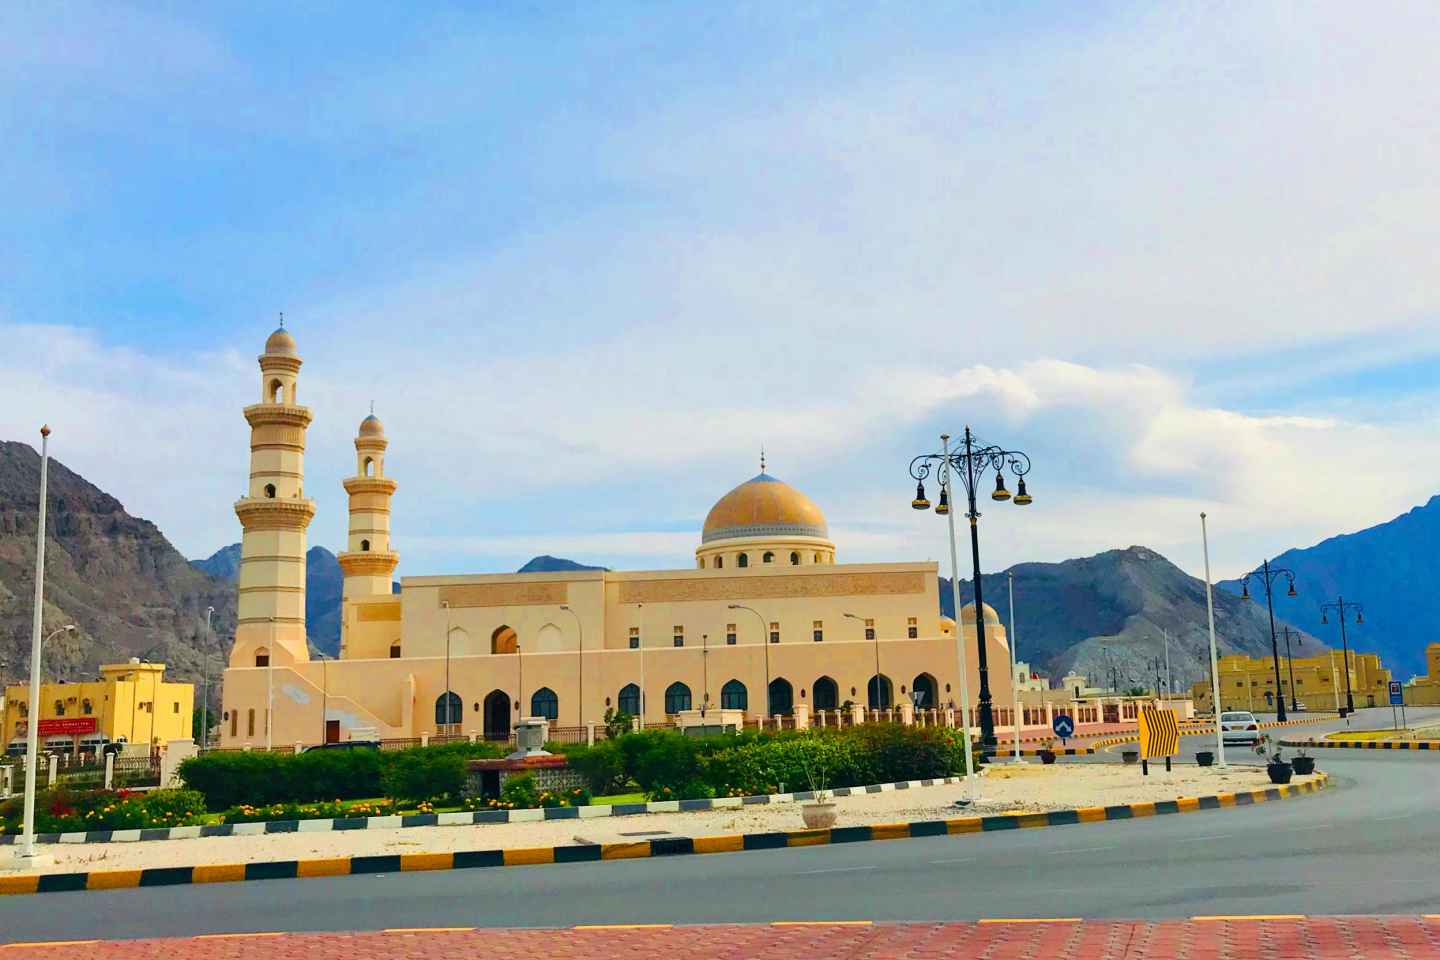 Khasab: Stadtrundfahrt mit Khasab Fort